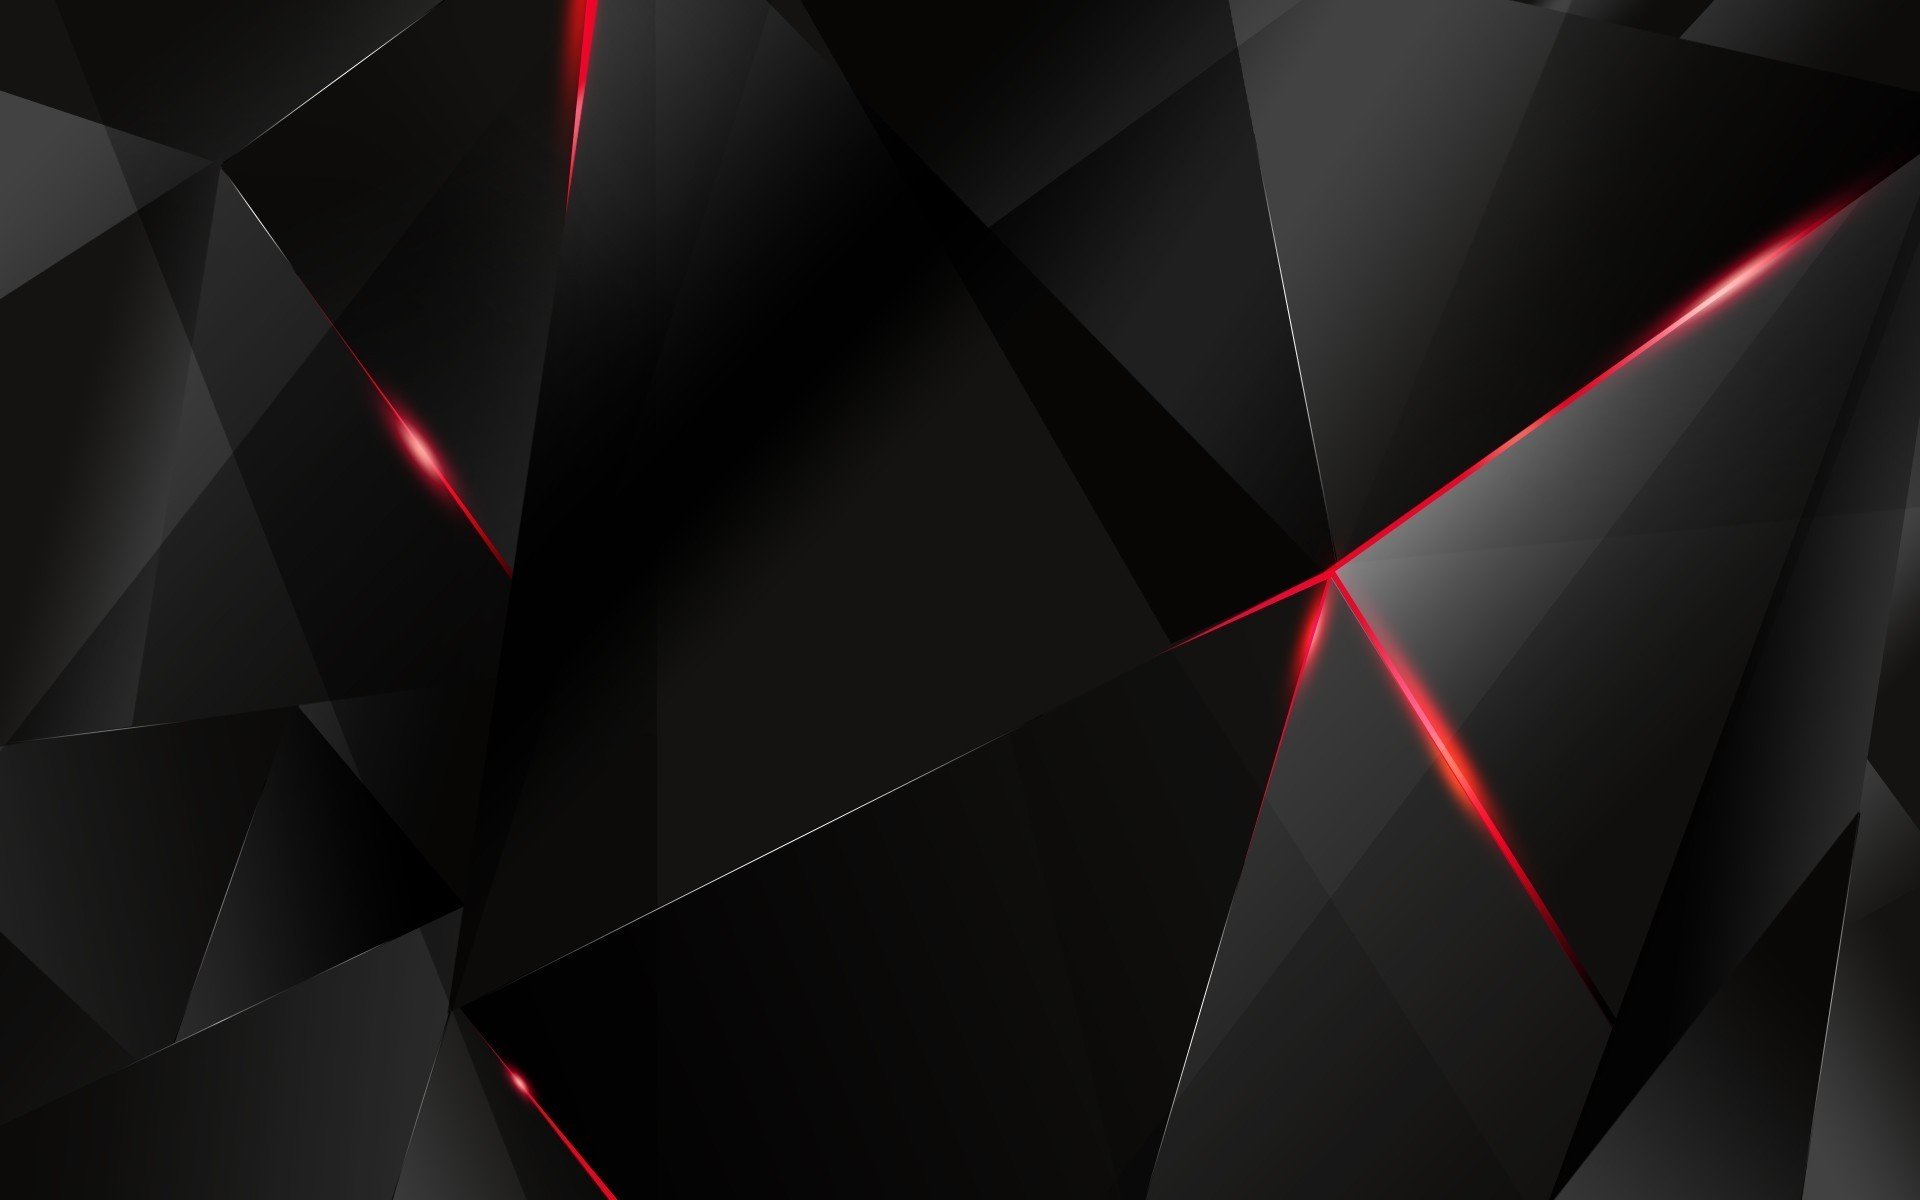 50+] Black and Red Desktop Wallpaper - WallpaperSafari